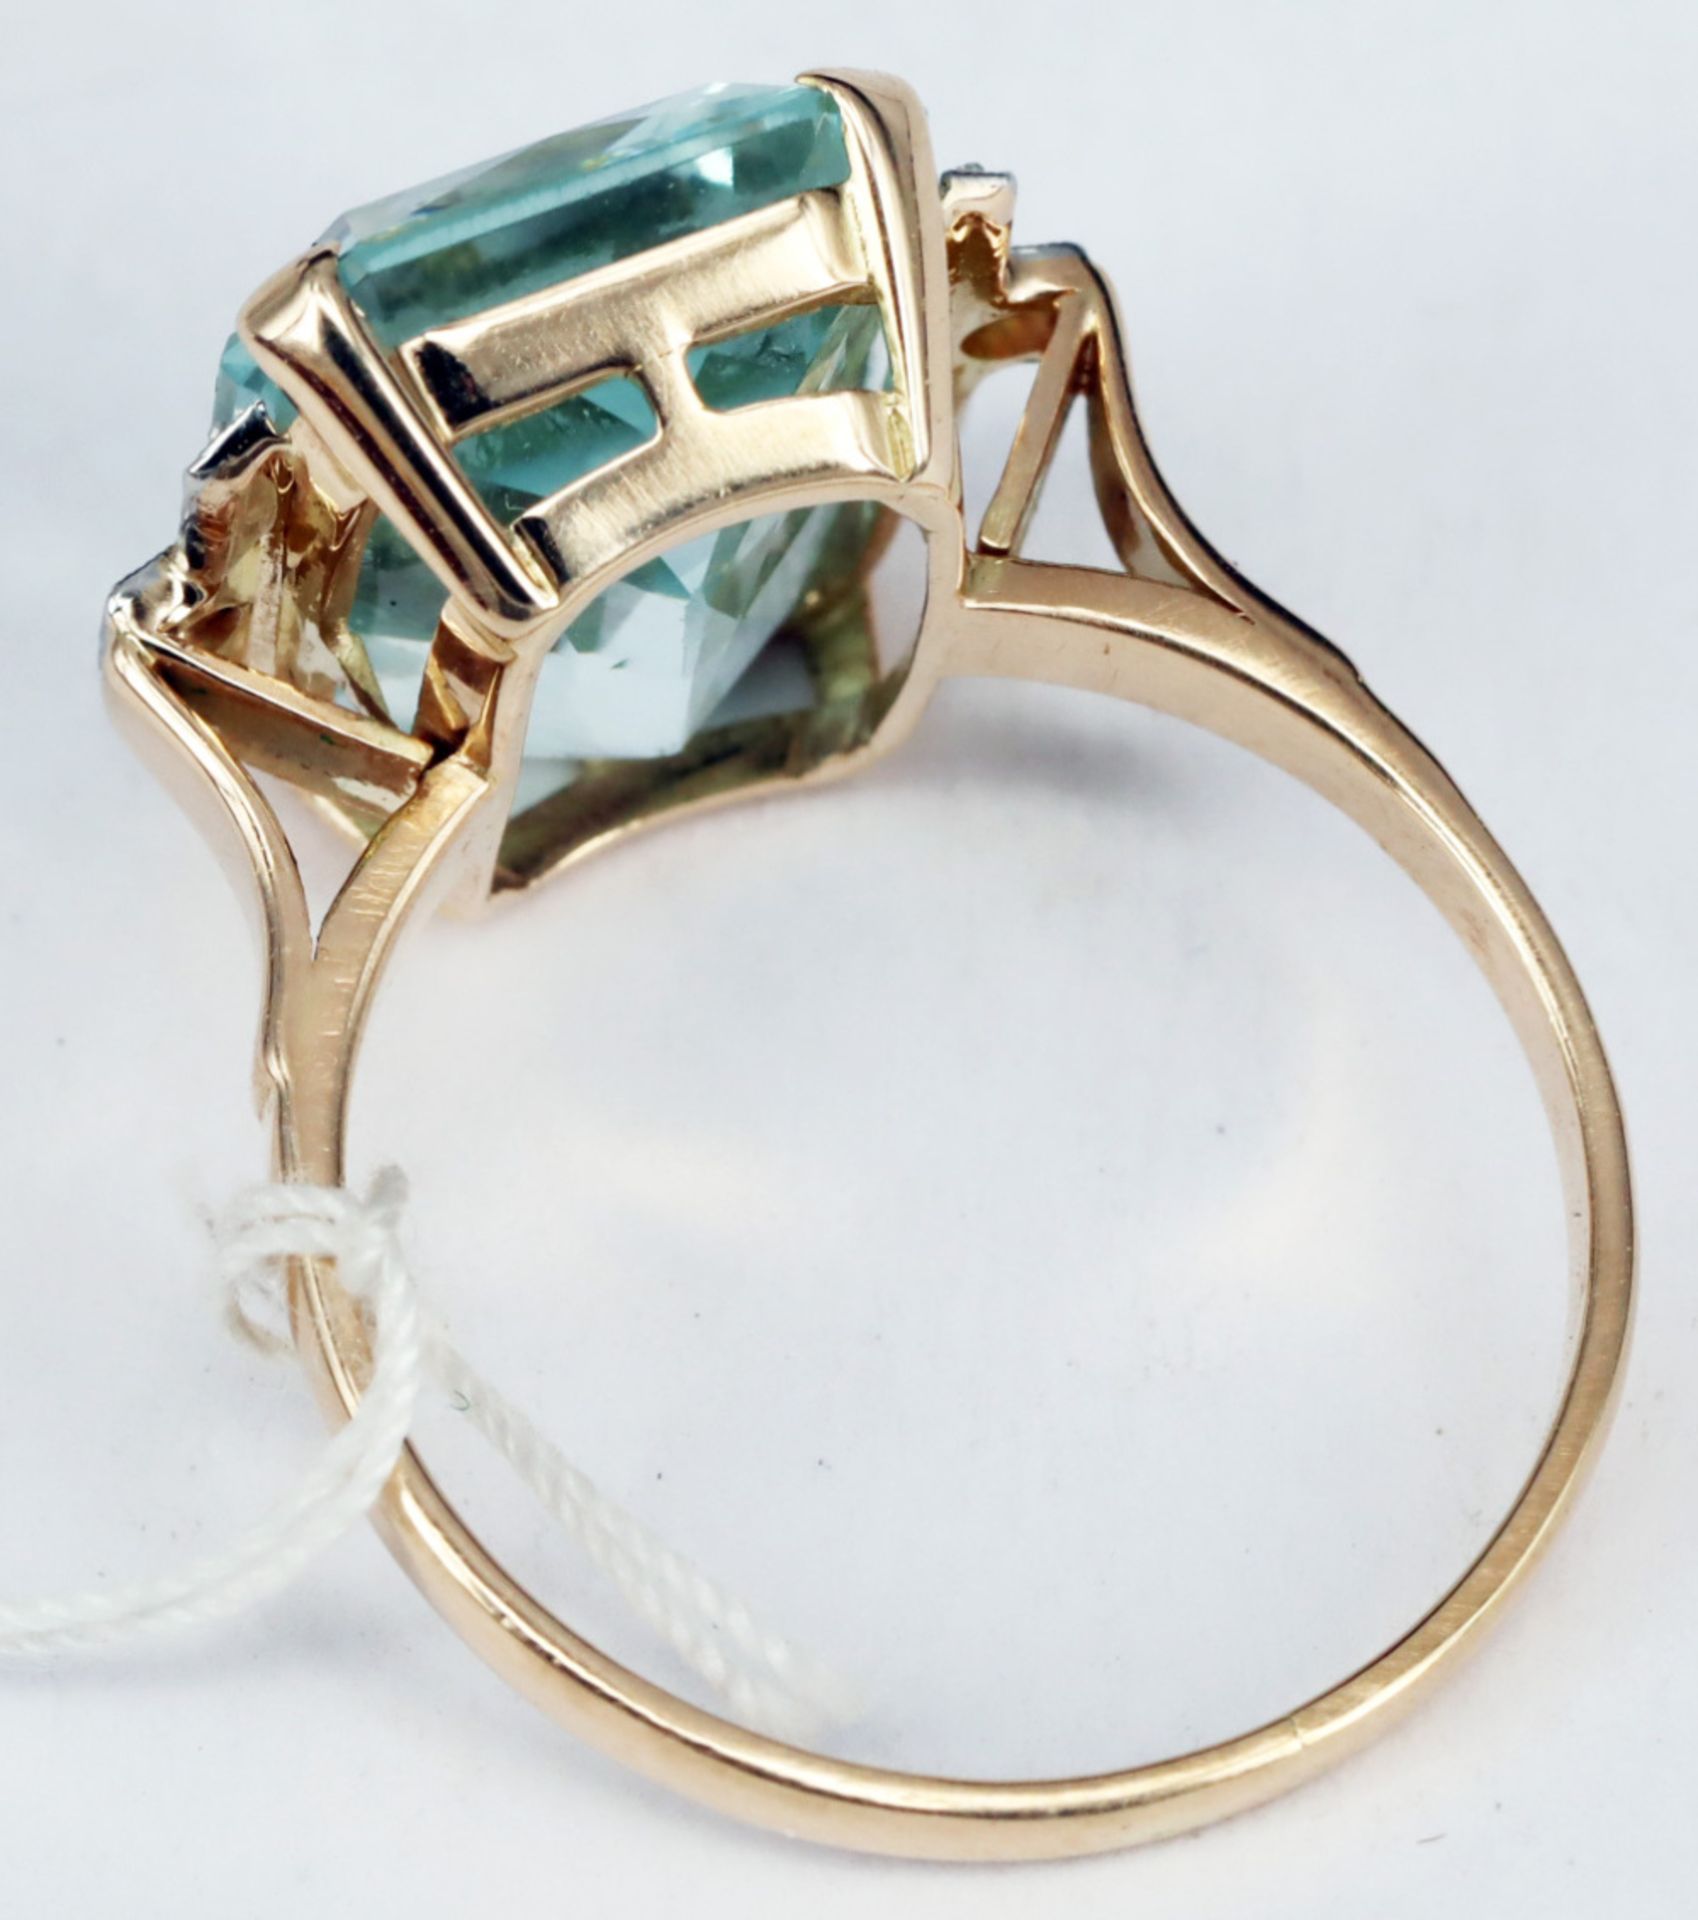 Ring, 585er GG, mit großem Aquamarin ca. 9 ct, seitlich mit Diamanten gefasst, Altersspuren, RG56 - Image 4 of 5